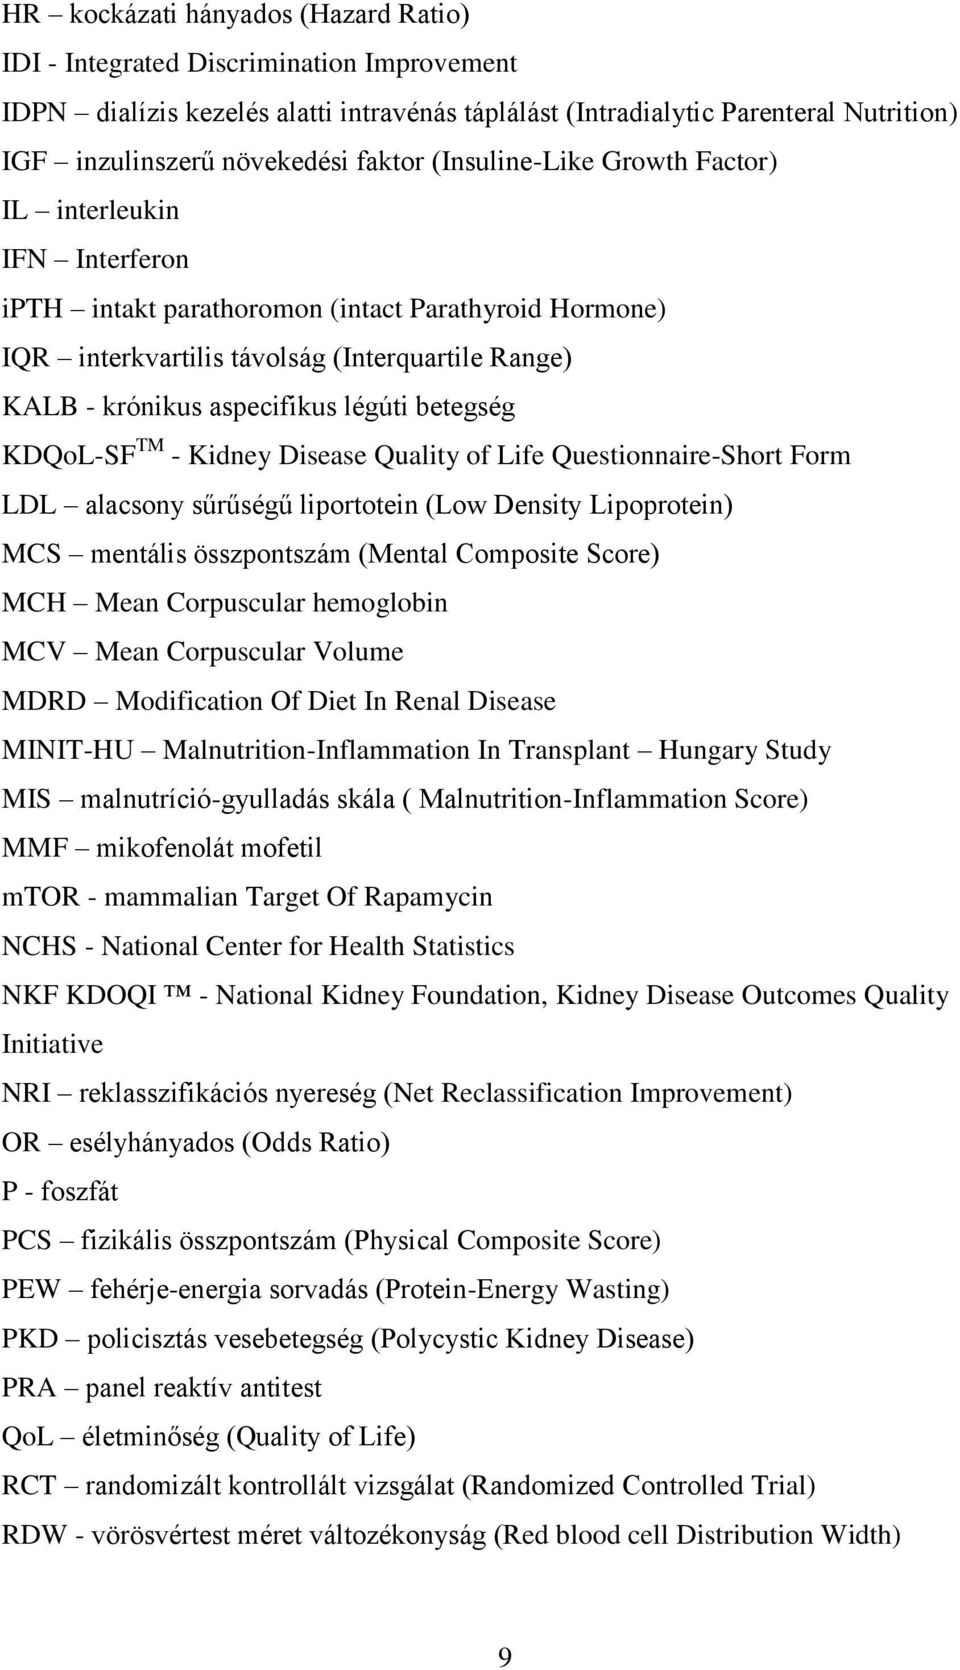 légúti betegség KDQoL-SF TM - Kidney Disease Quality of Life Questionnaire-Short Form LDL alacsony sűrűségű liportotein (Low Density Lipoprotein) MCS mentális összpontszám (Mental Composite Score)